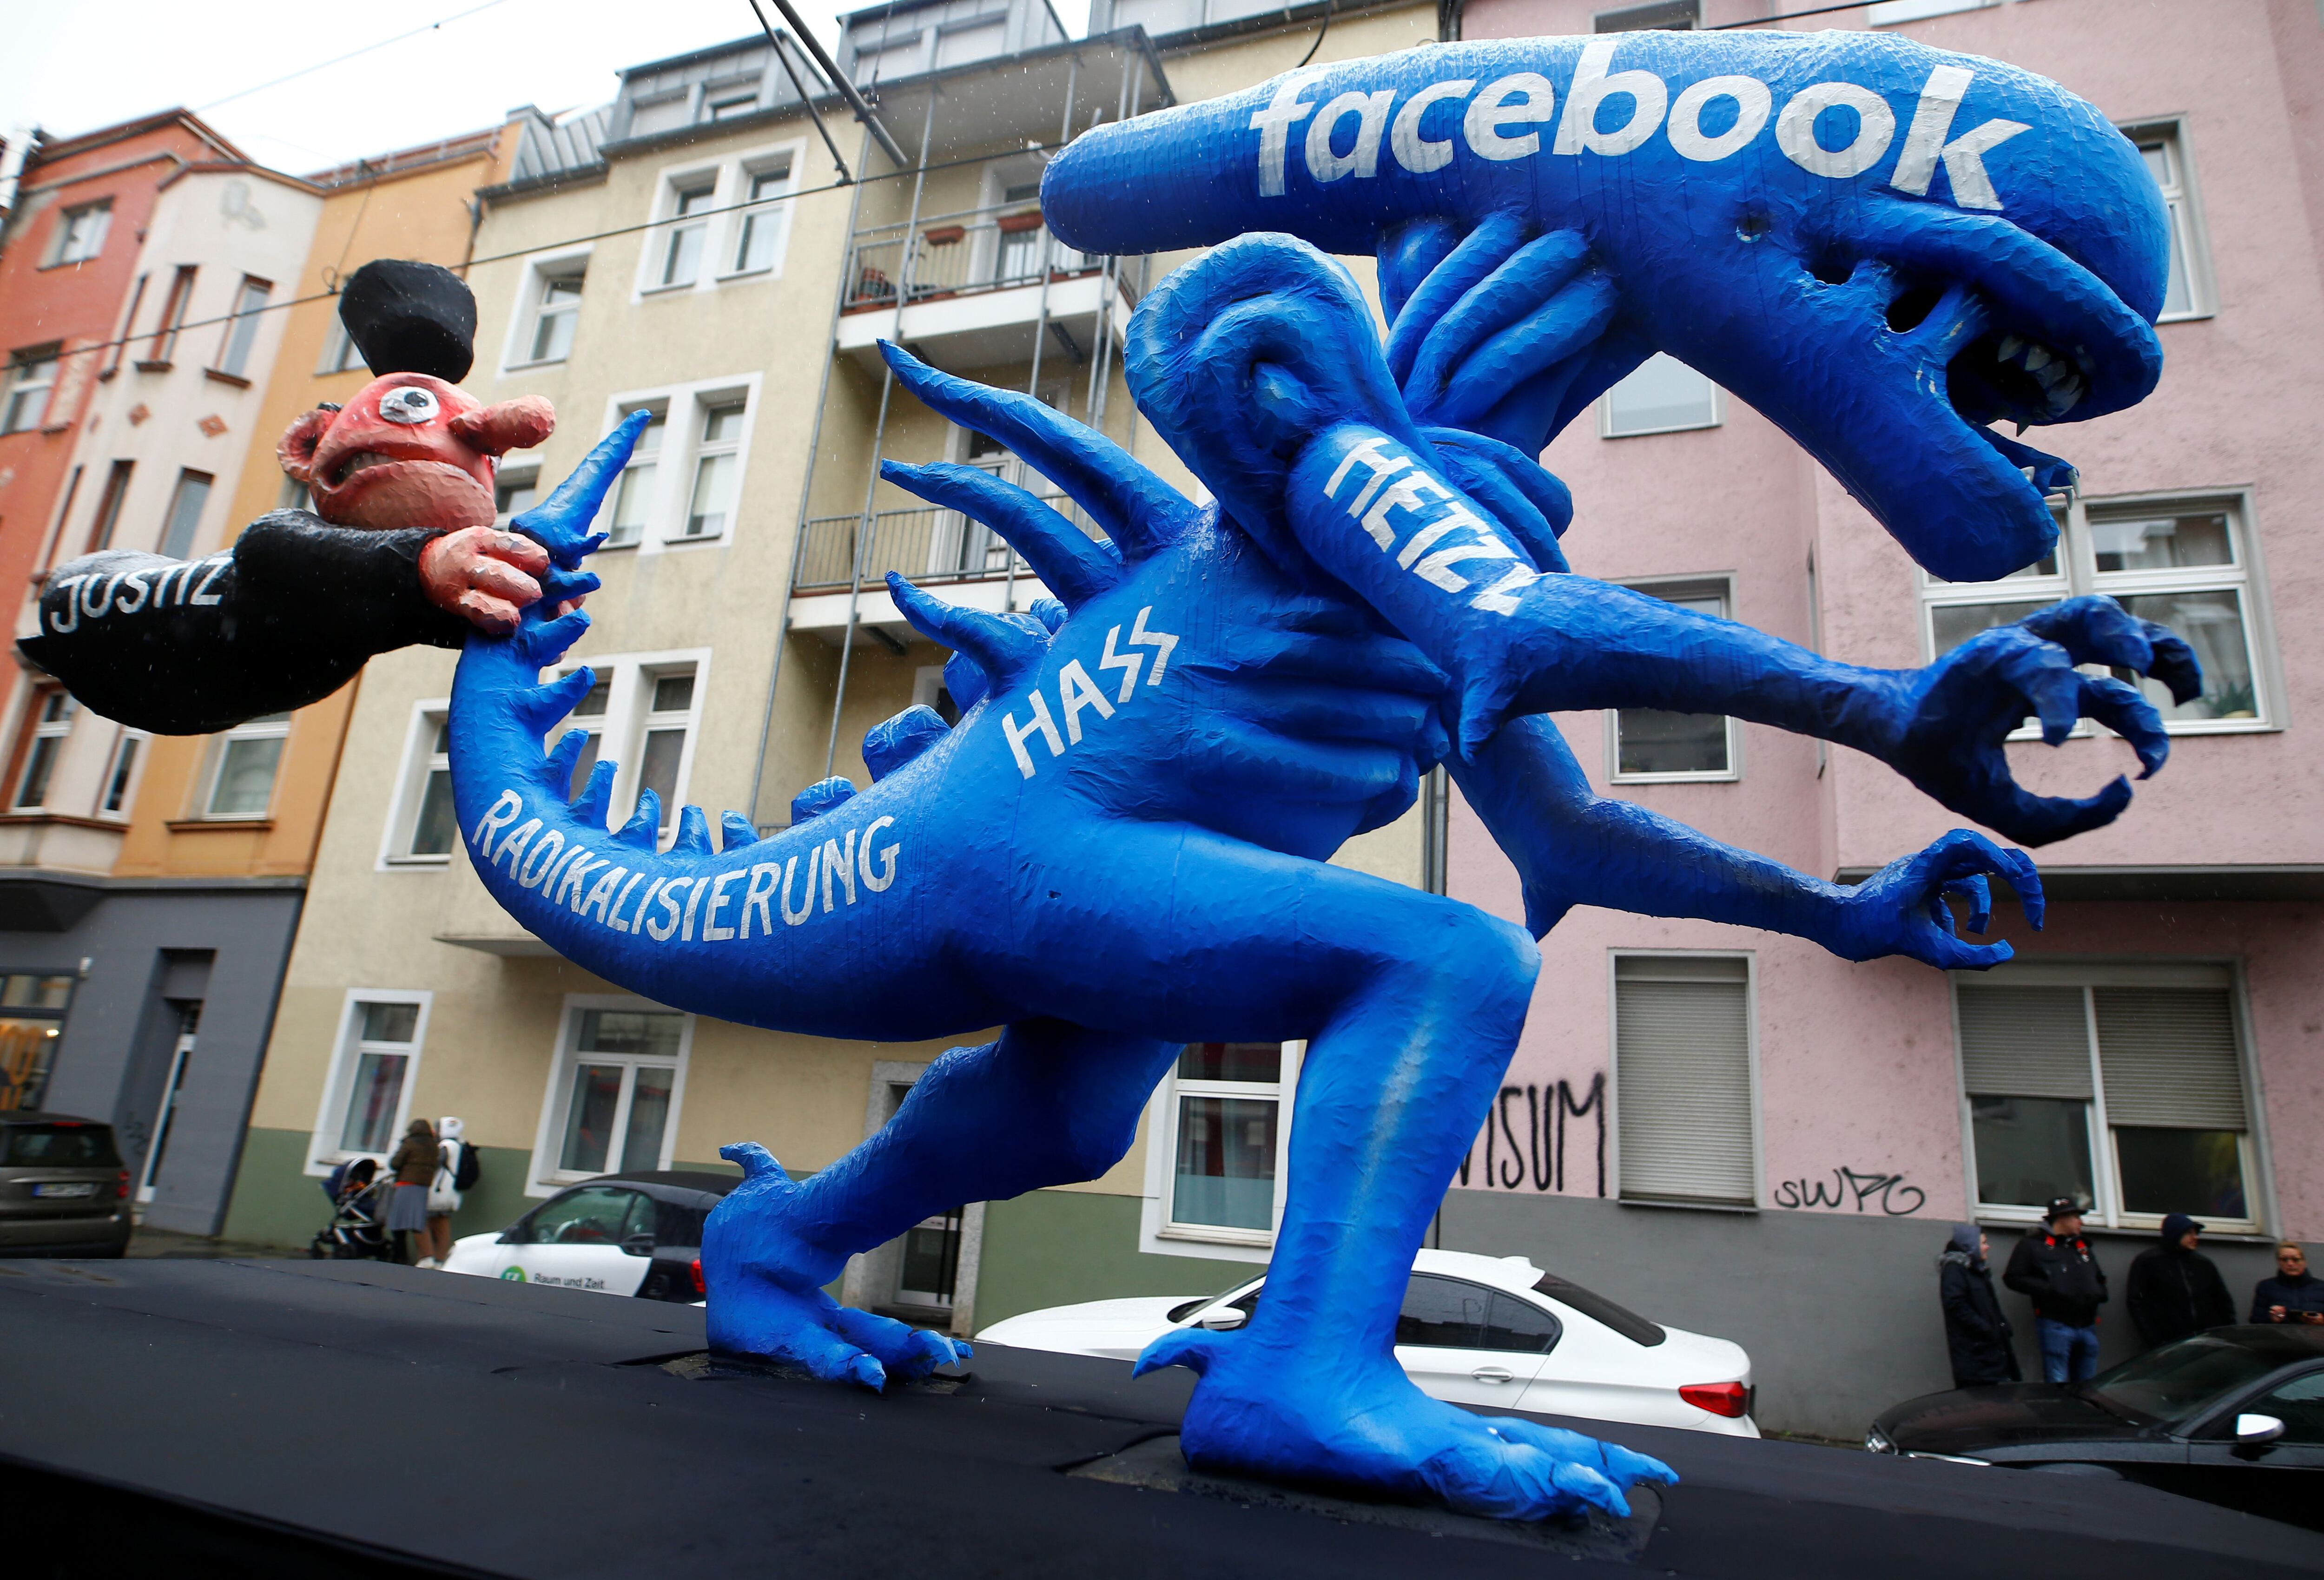 Manifestação em Düsseldorf (Alemanha) em que o Facebook pe criticado  por promover discurso de ódio.